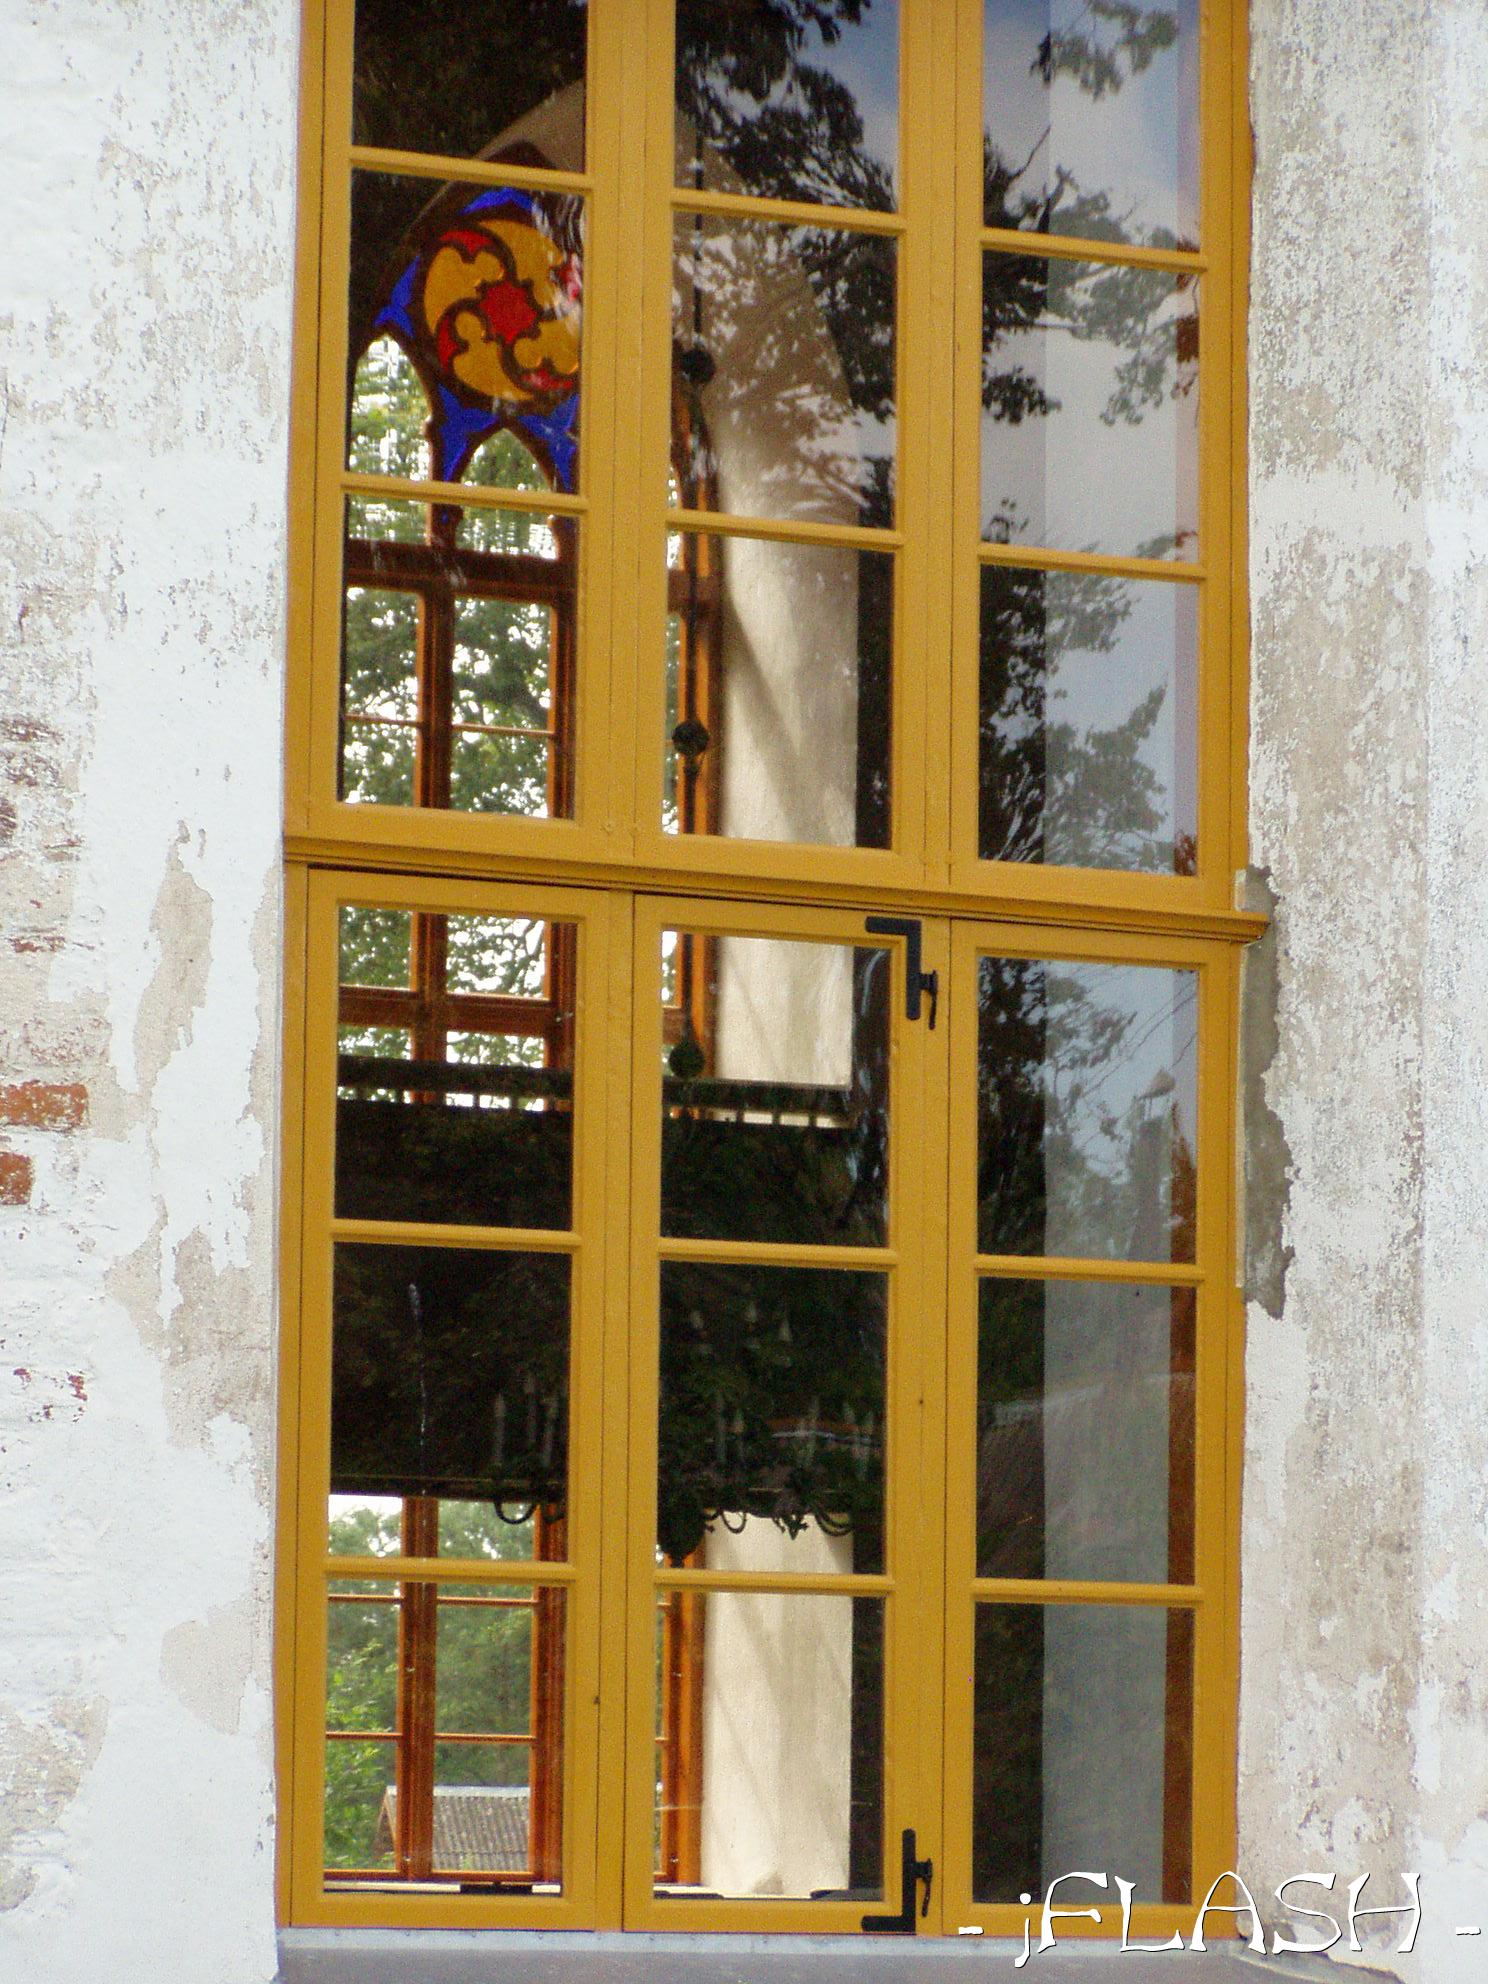 Vaade vitraaźile kiriku aknast
Võtmesõnad: kirik